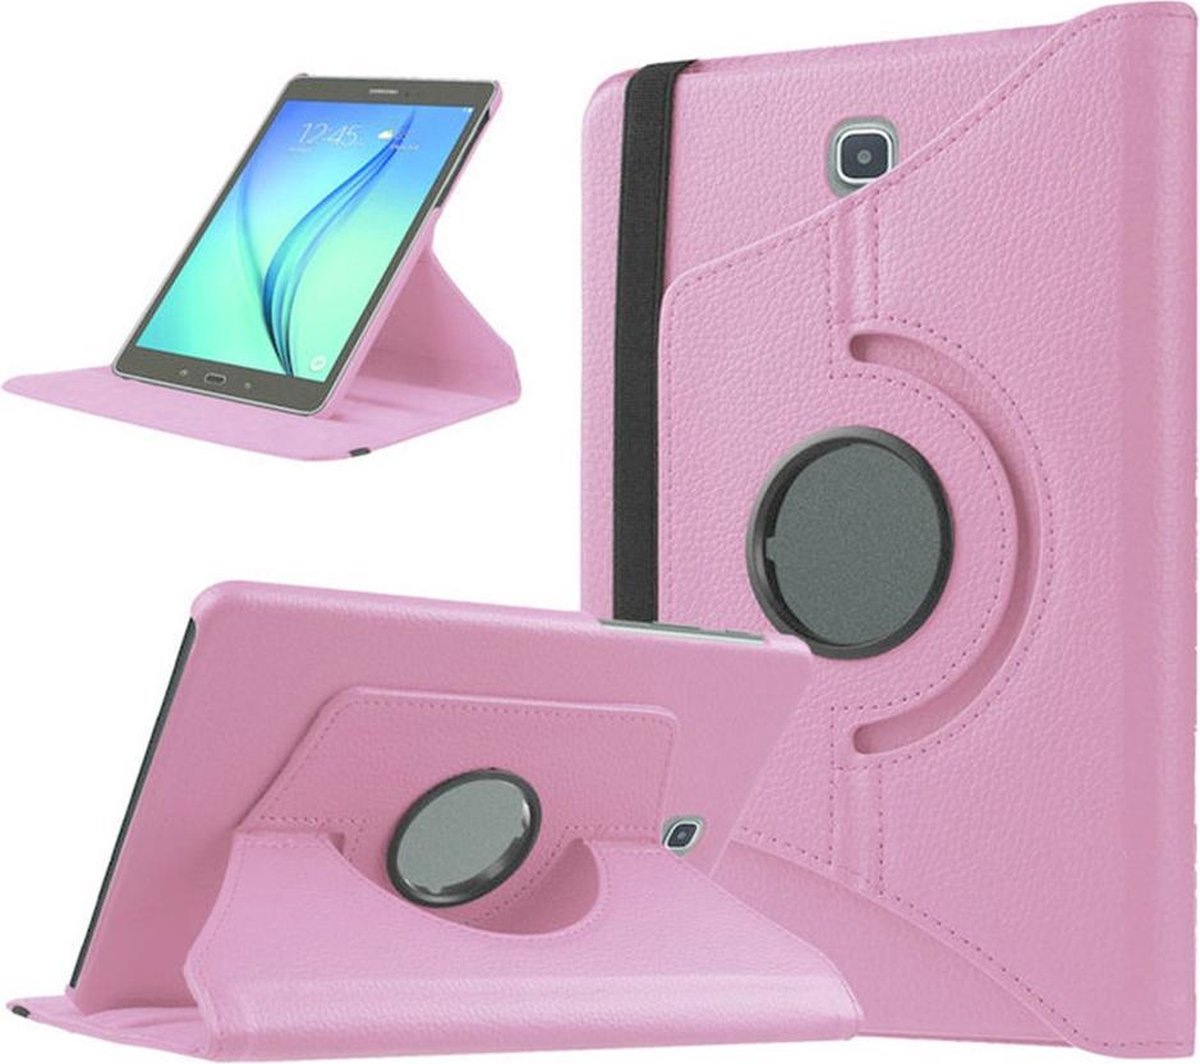 Samsung Galaxy Tab A 10.1 2016 SM T580 Draaibaar Hoesje met stylus pen Multi stand Case - Licht roze